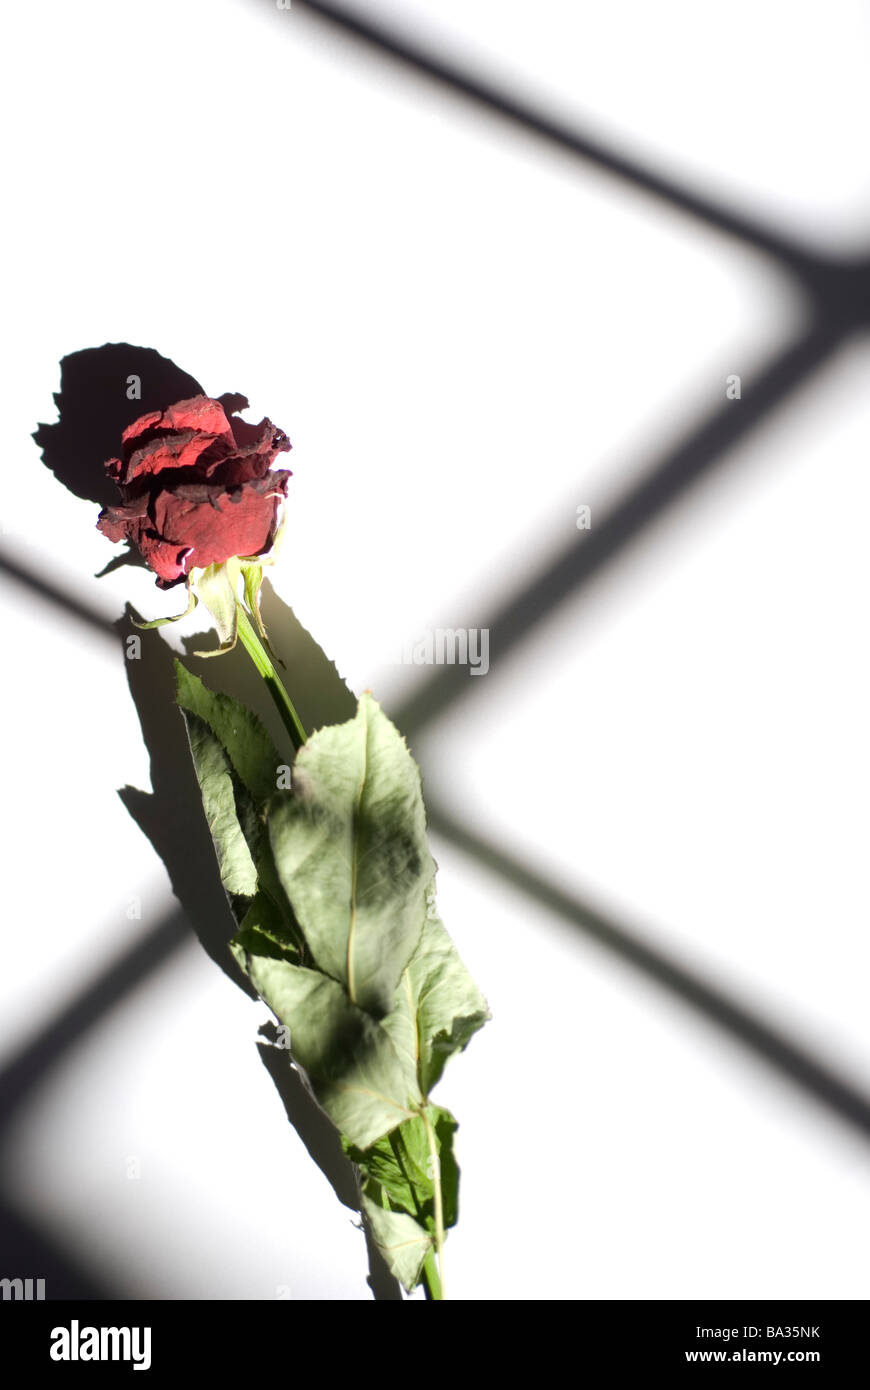 Rosa roja seca con una ventana de luz de reflejo Foto de stock